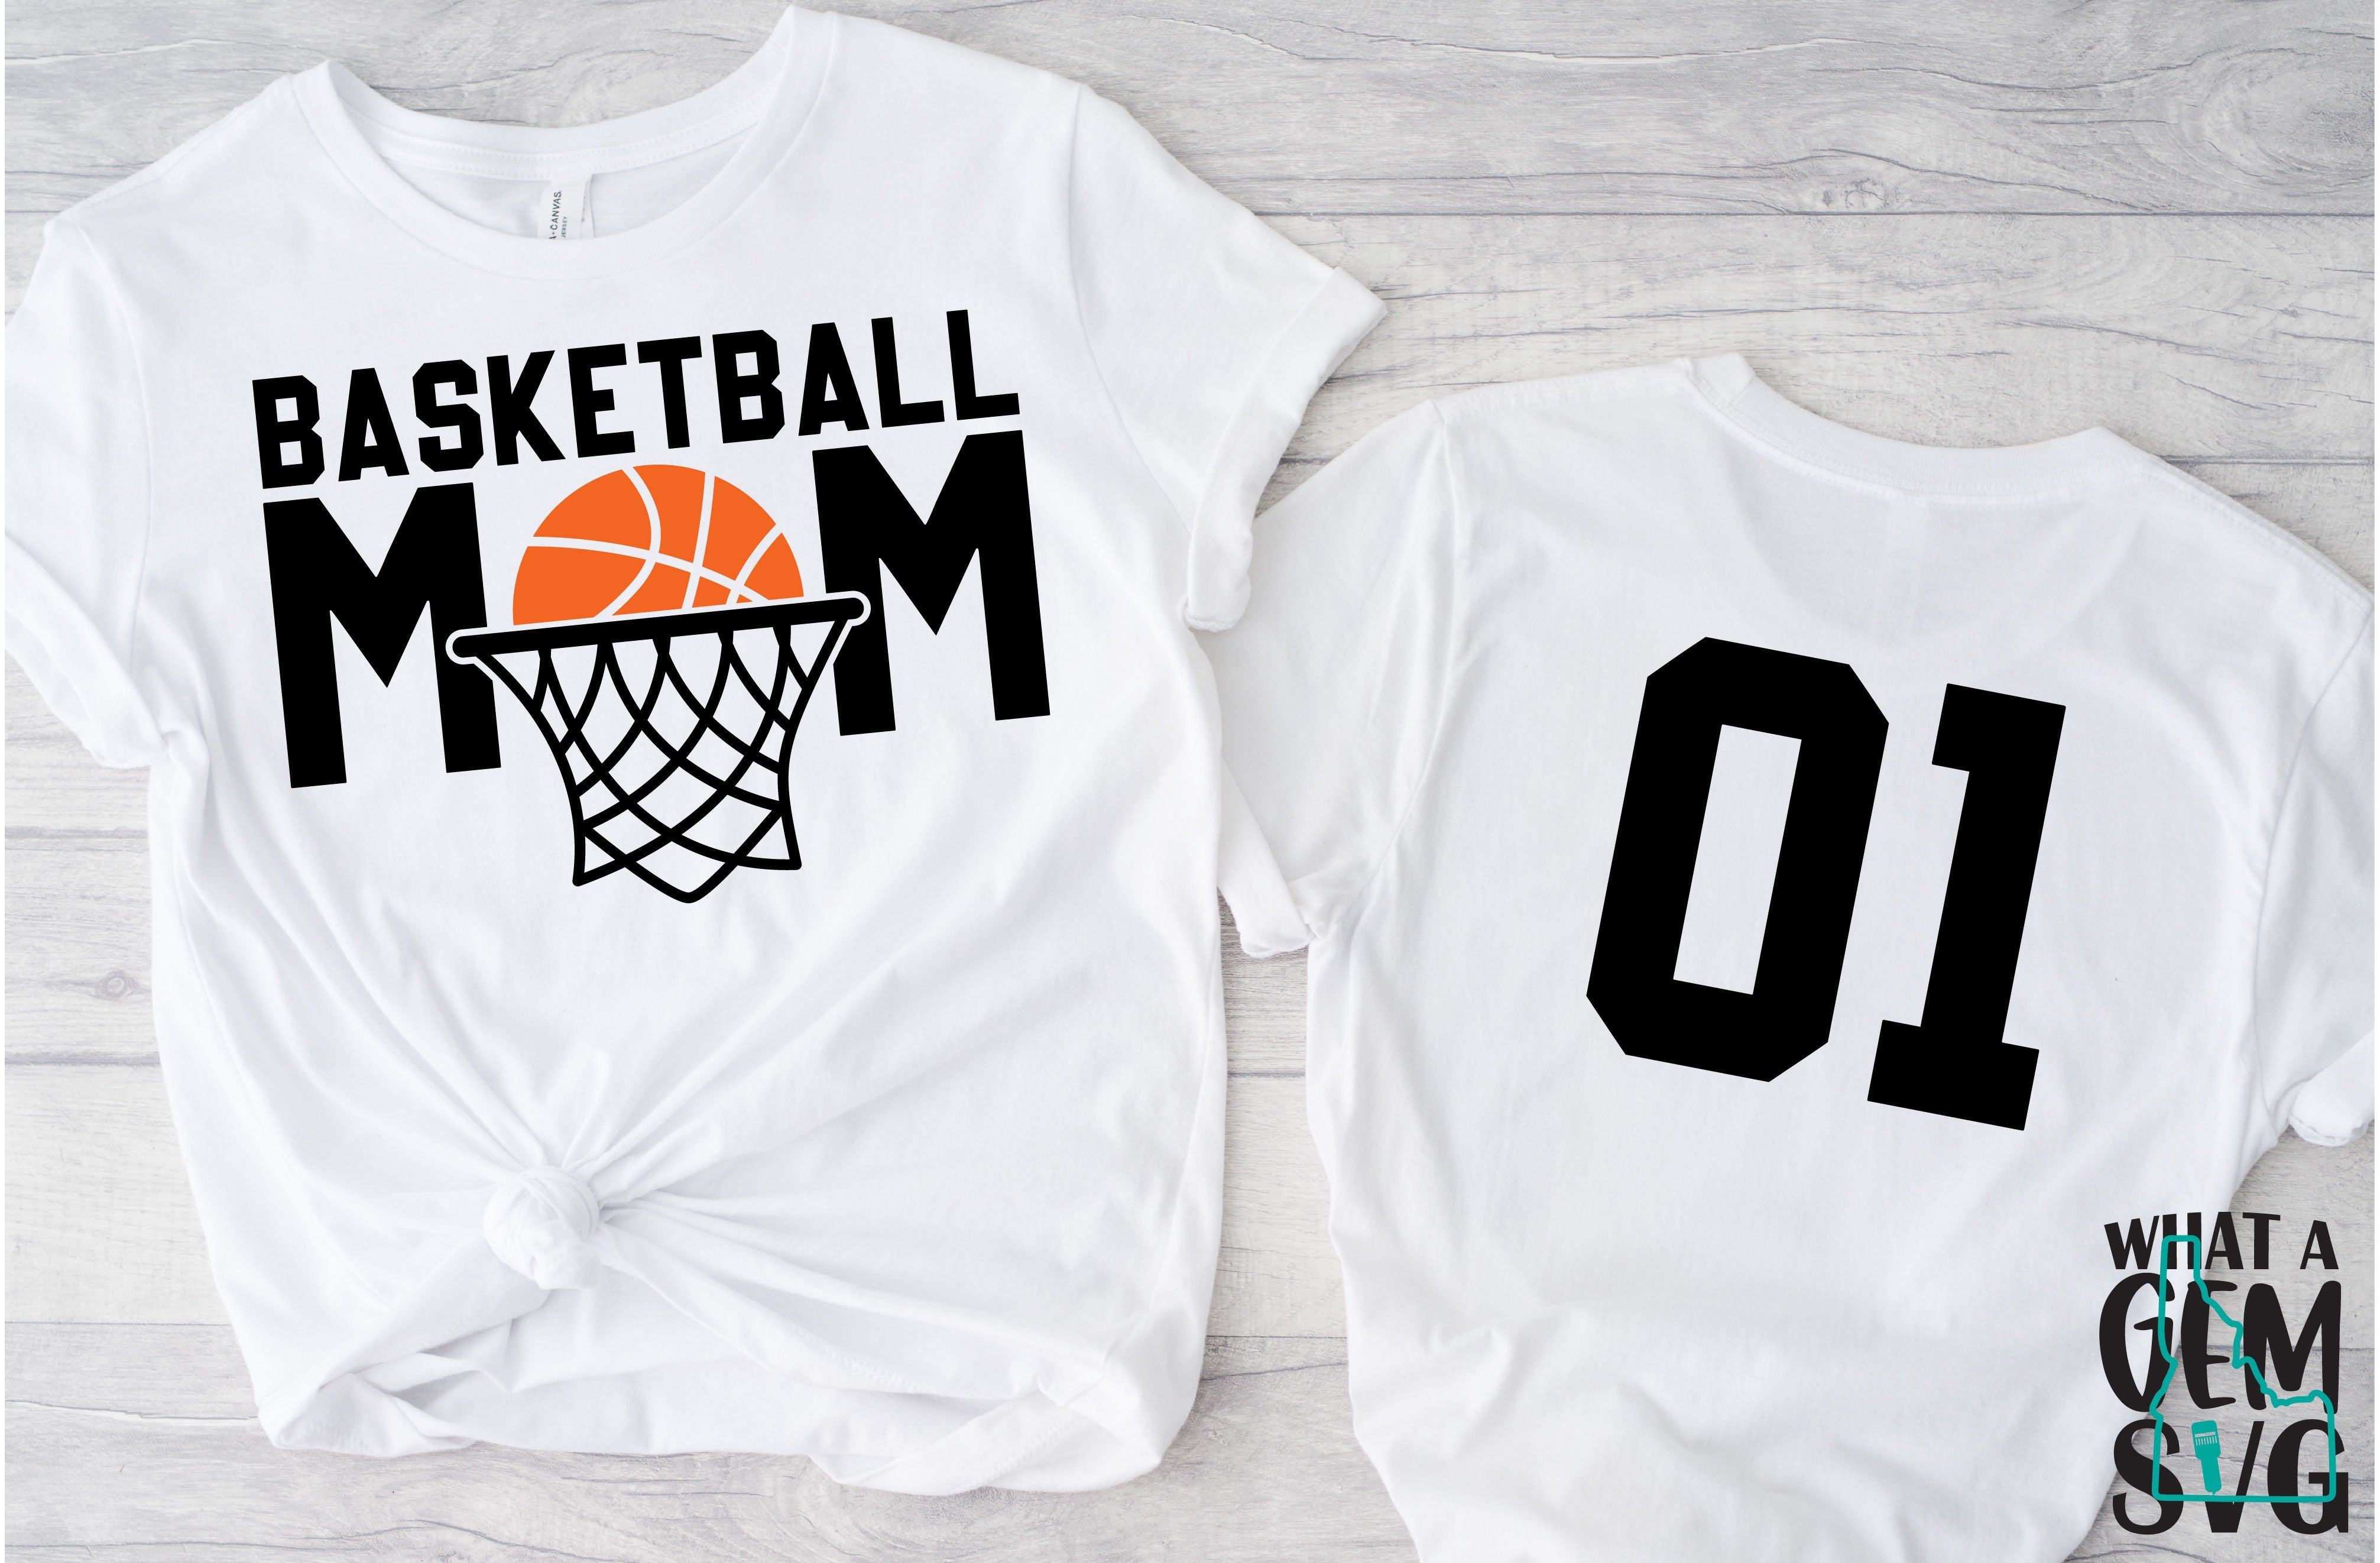 Basketball Mom Svg, Basketball Mama Svg, Love Basketball Svg